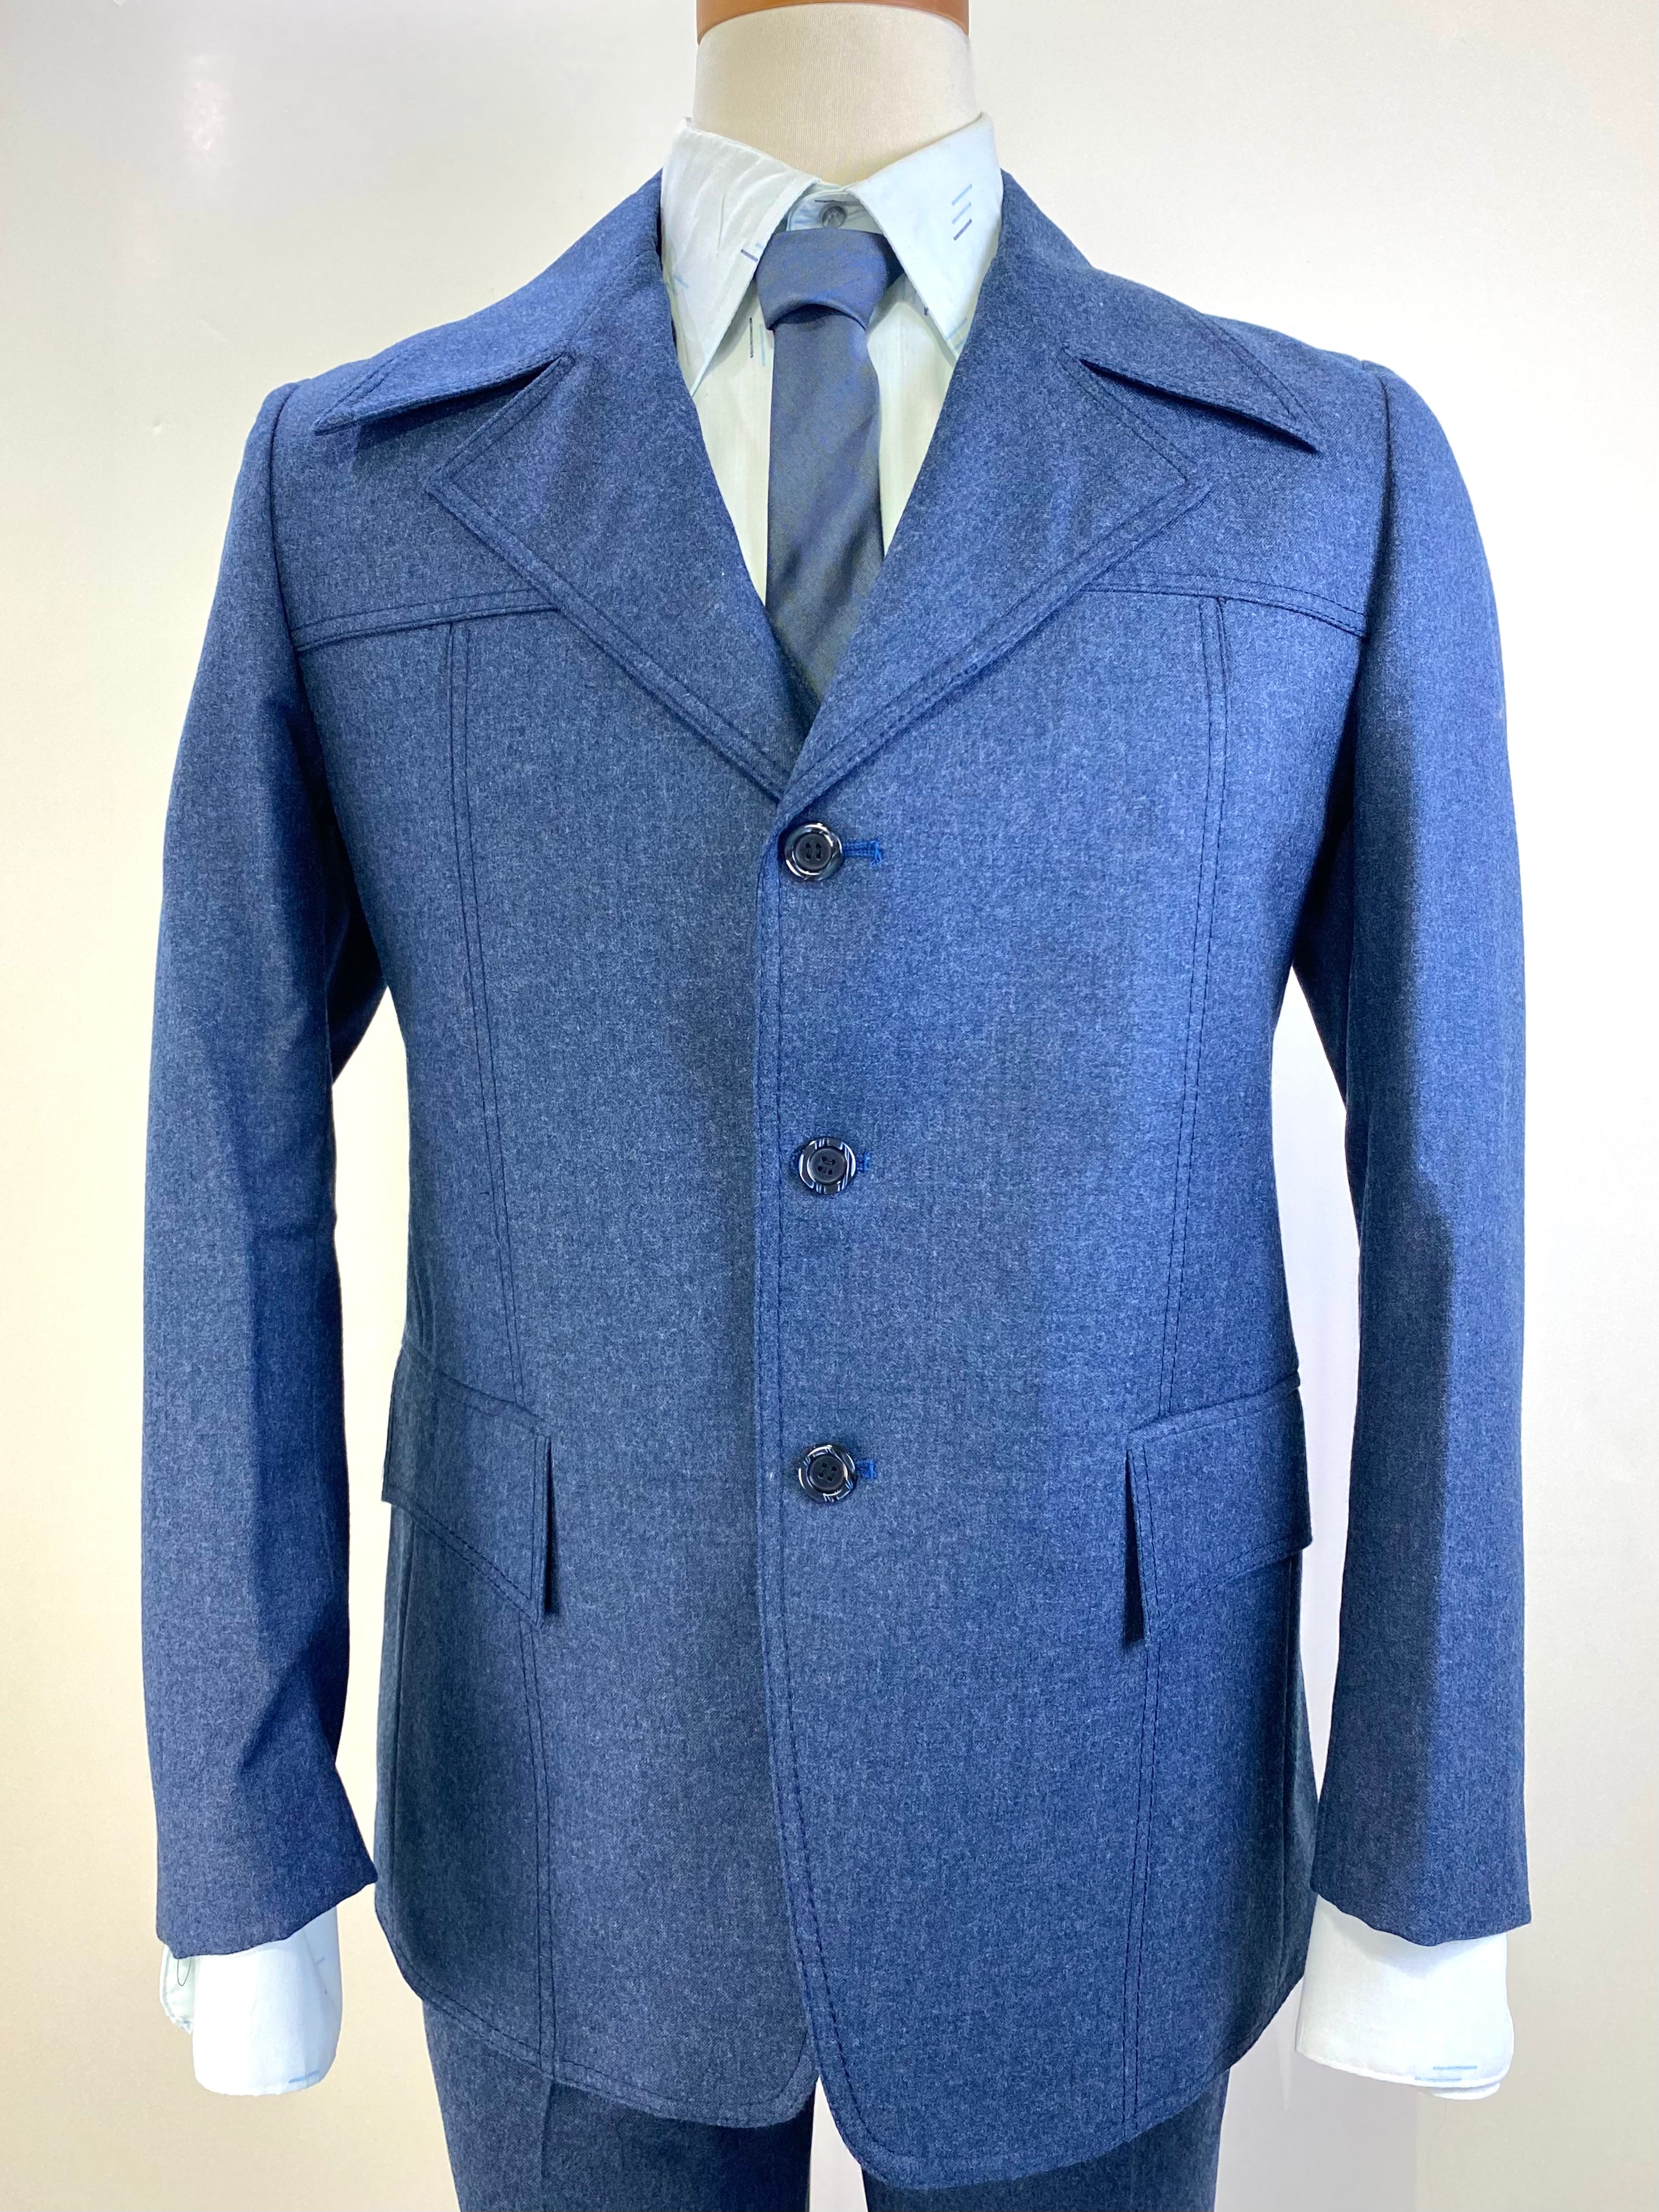 1970s Vintage Deadstock Men's Suit, Blue Wool 3-Piece Suit, Kent